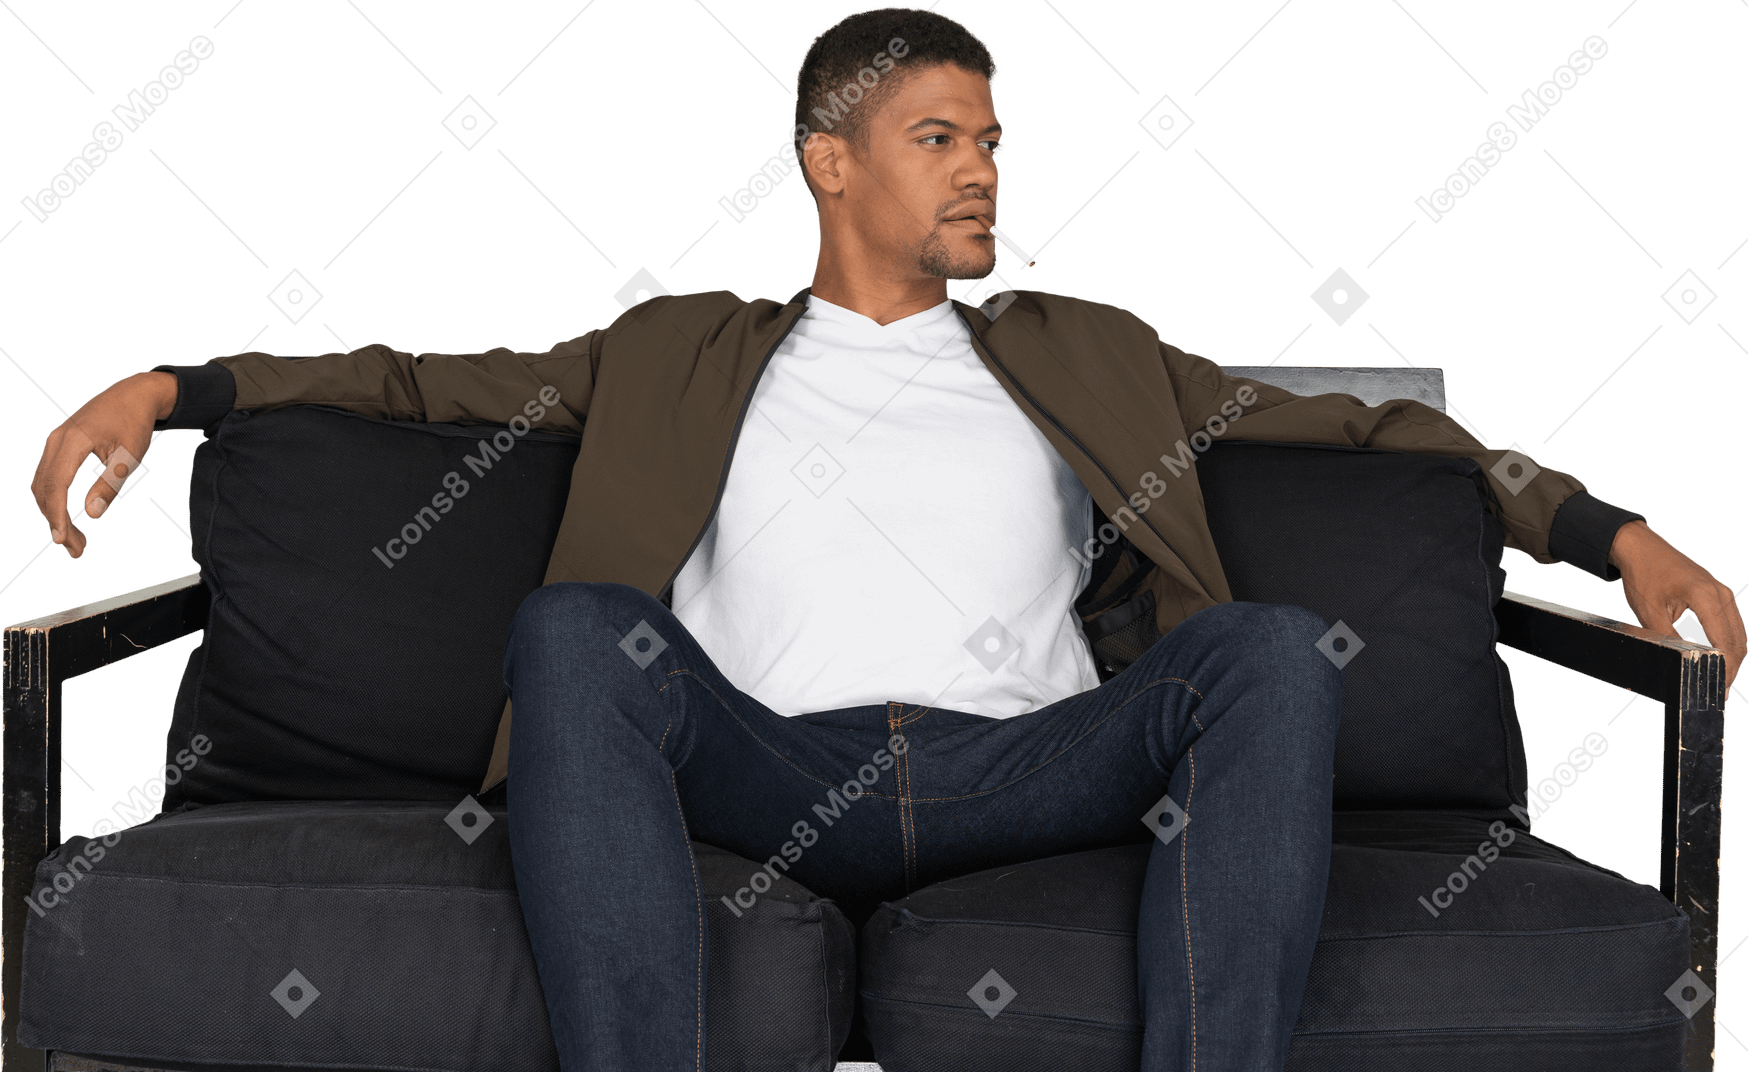 Vorderansicht eines jungen mannes, der auf einem sofa sitzt und eine zigarette im mund hält